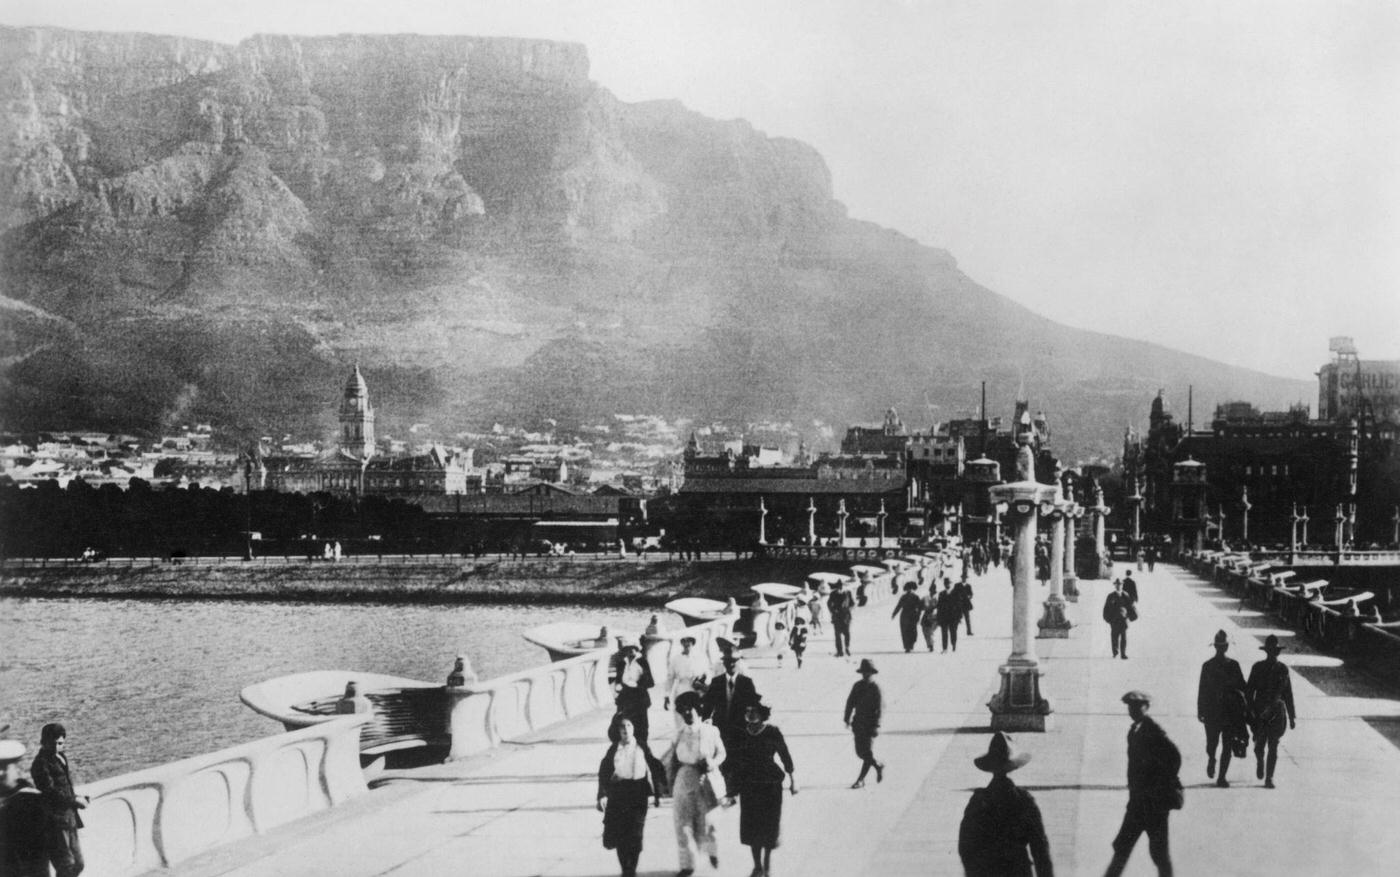 Cape Town, 1930s